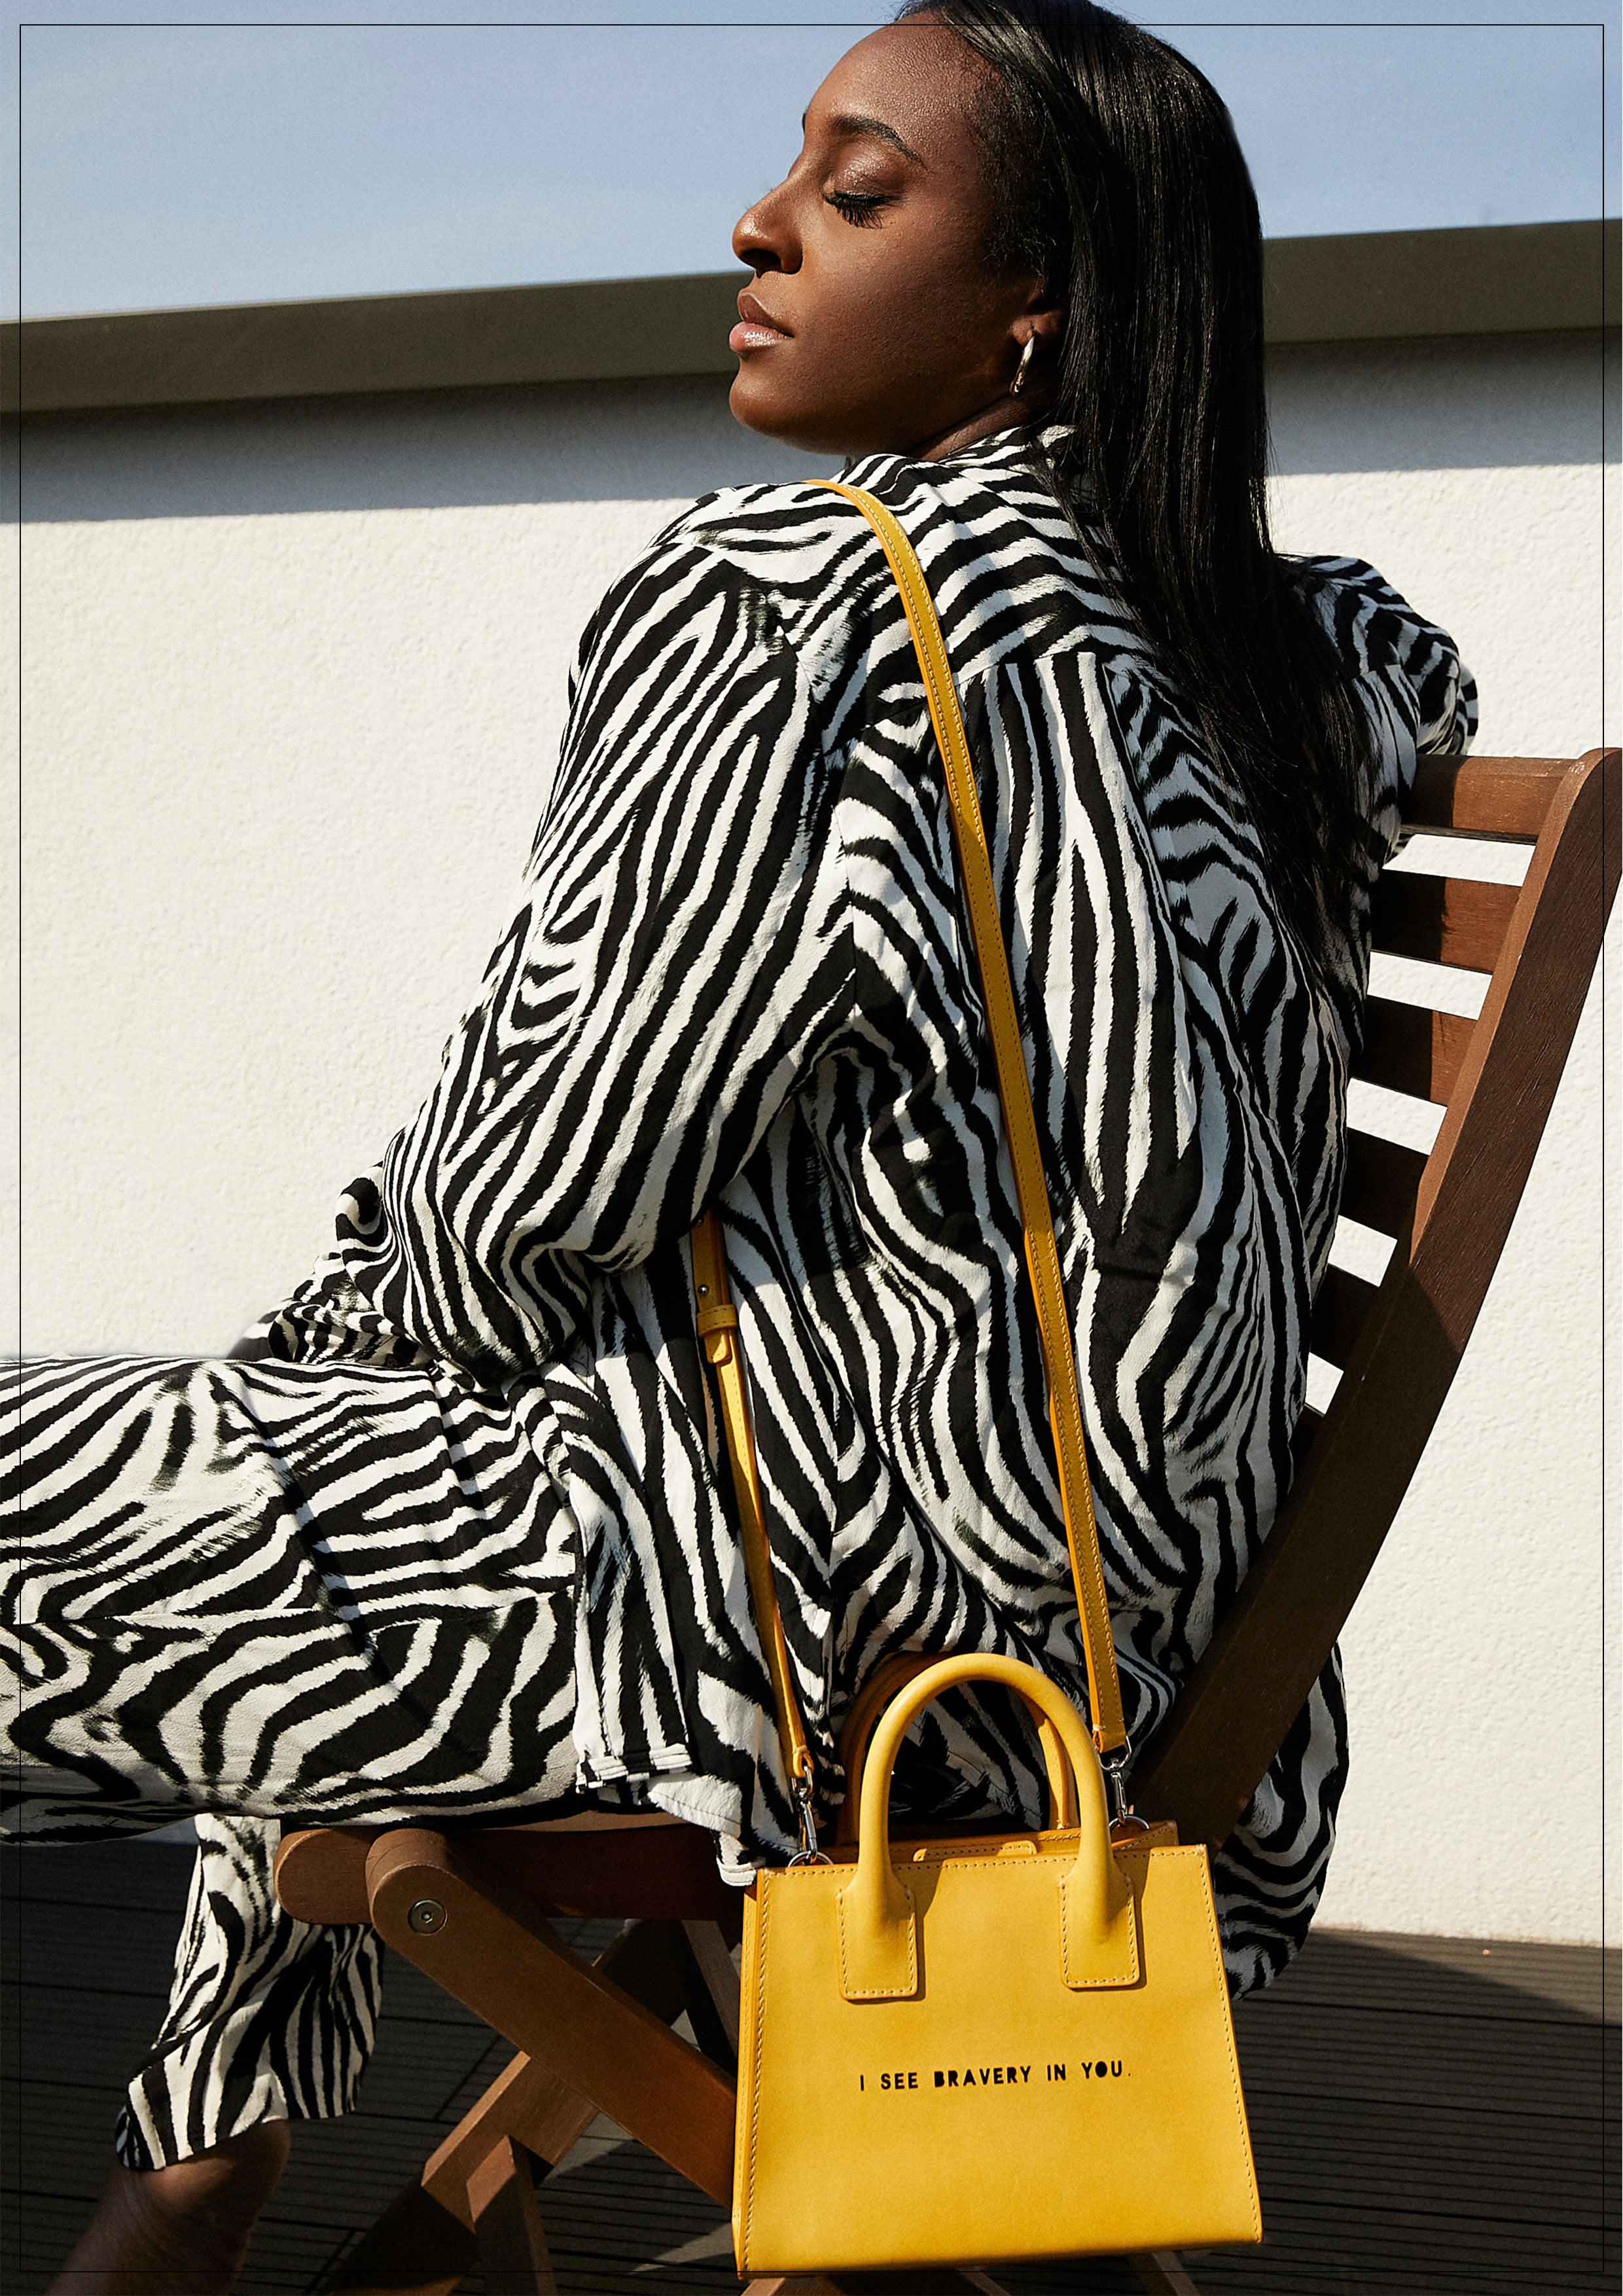 Dior Bediako Anti-Racism in Fashion